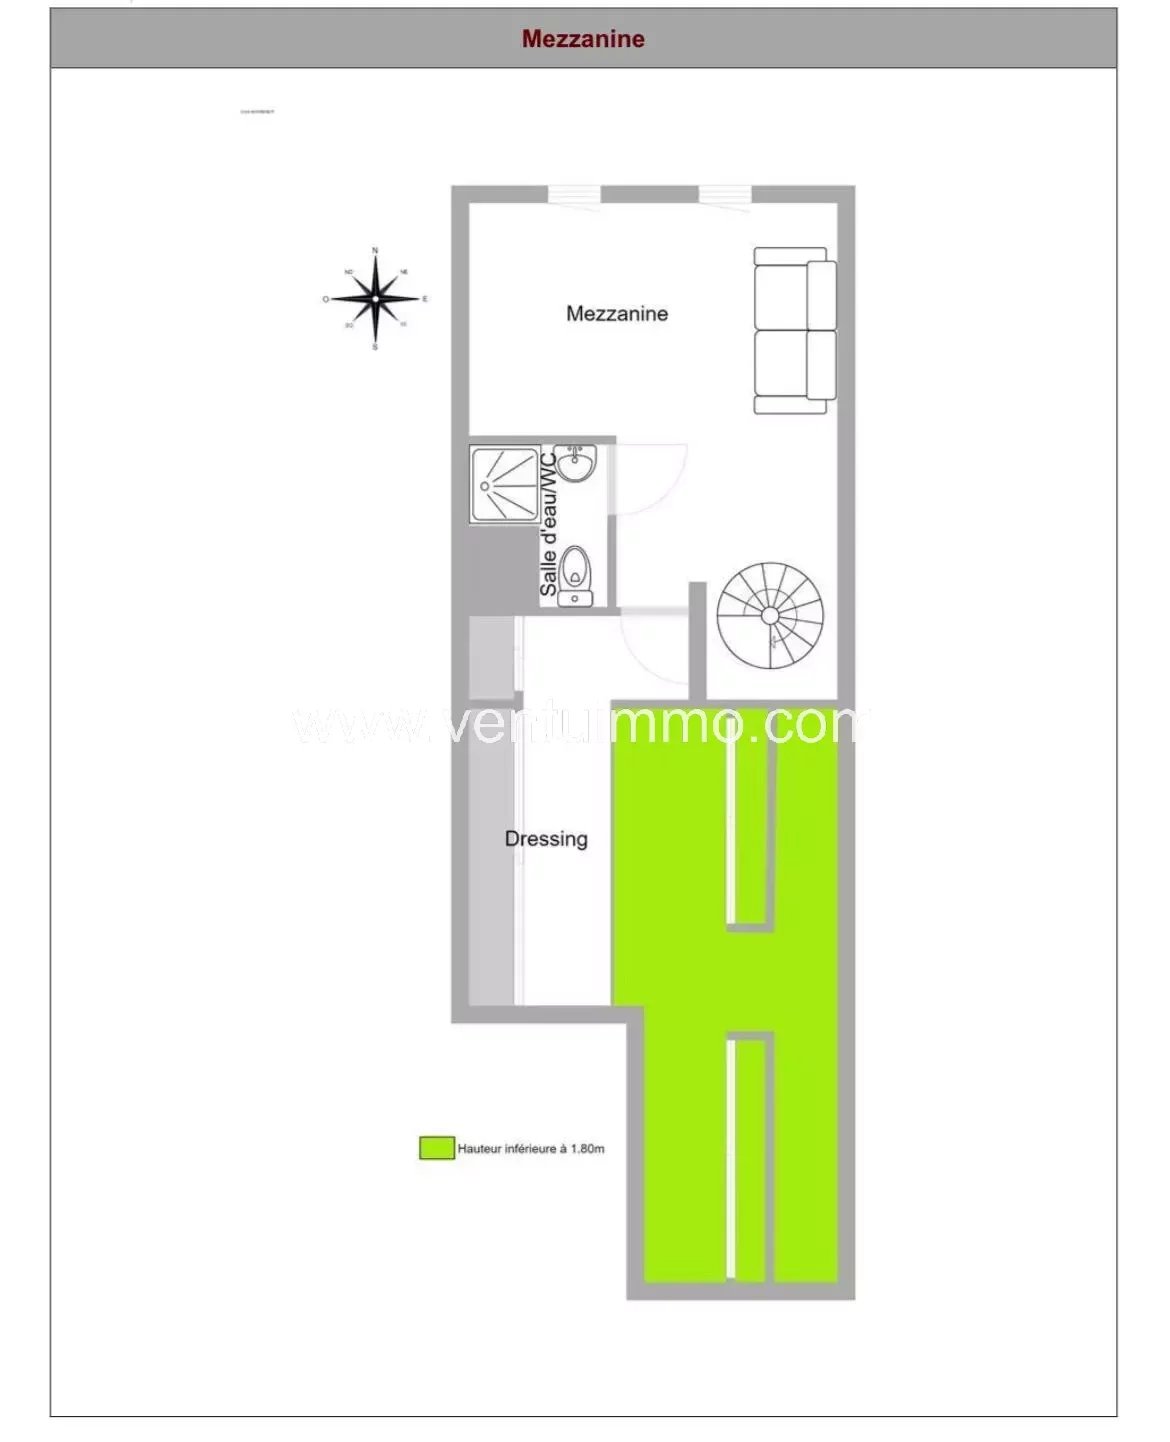 Appartement T3 duplex + terrasse + piscine - tennis + parking cave